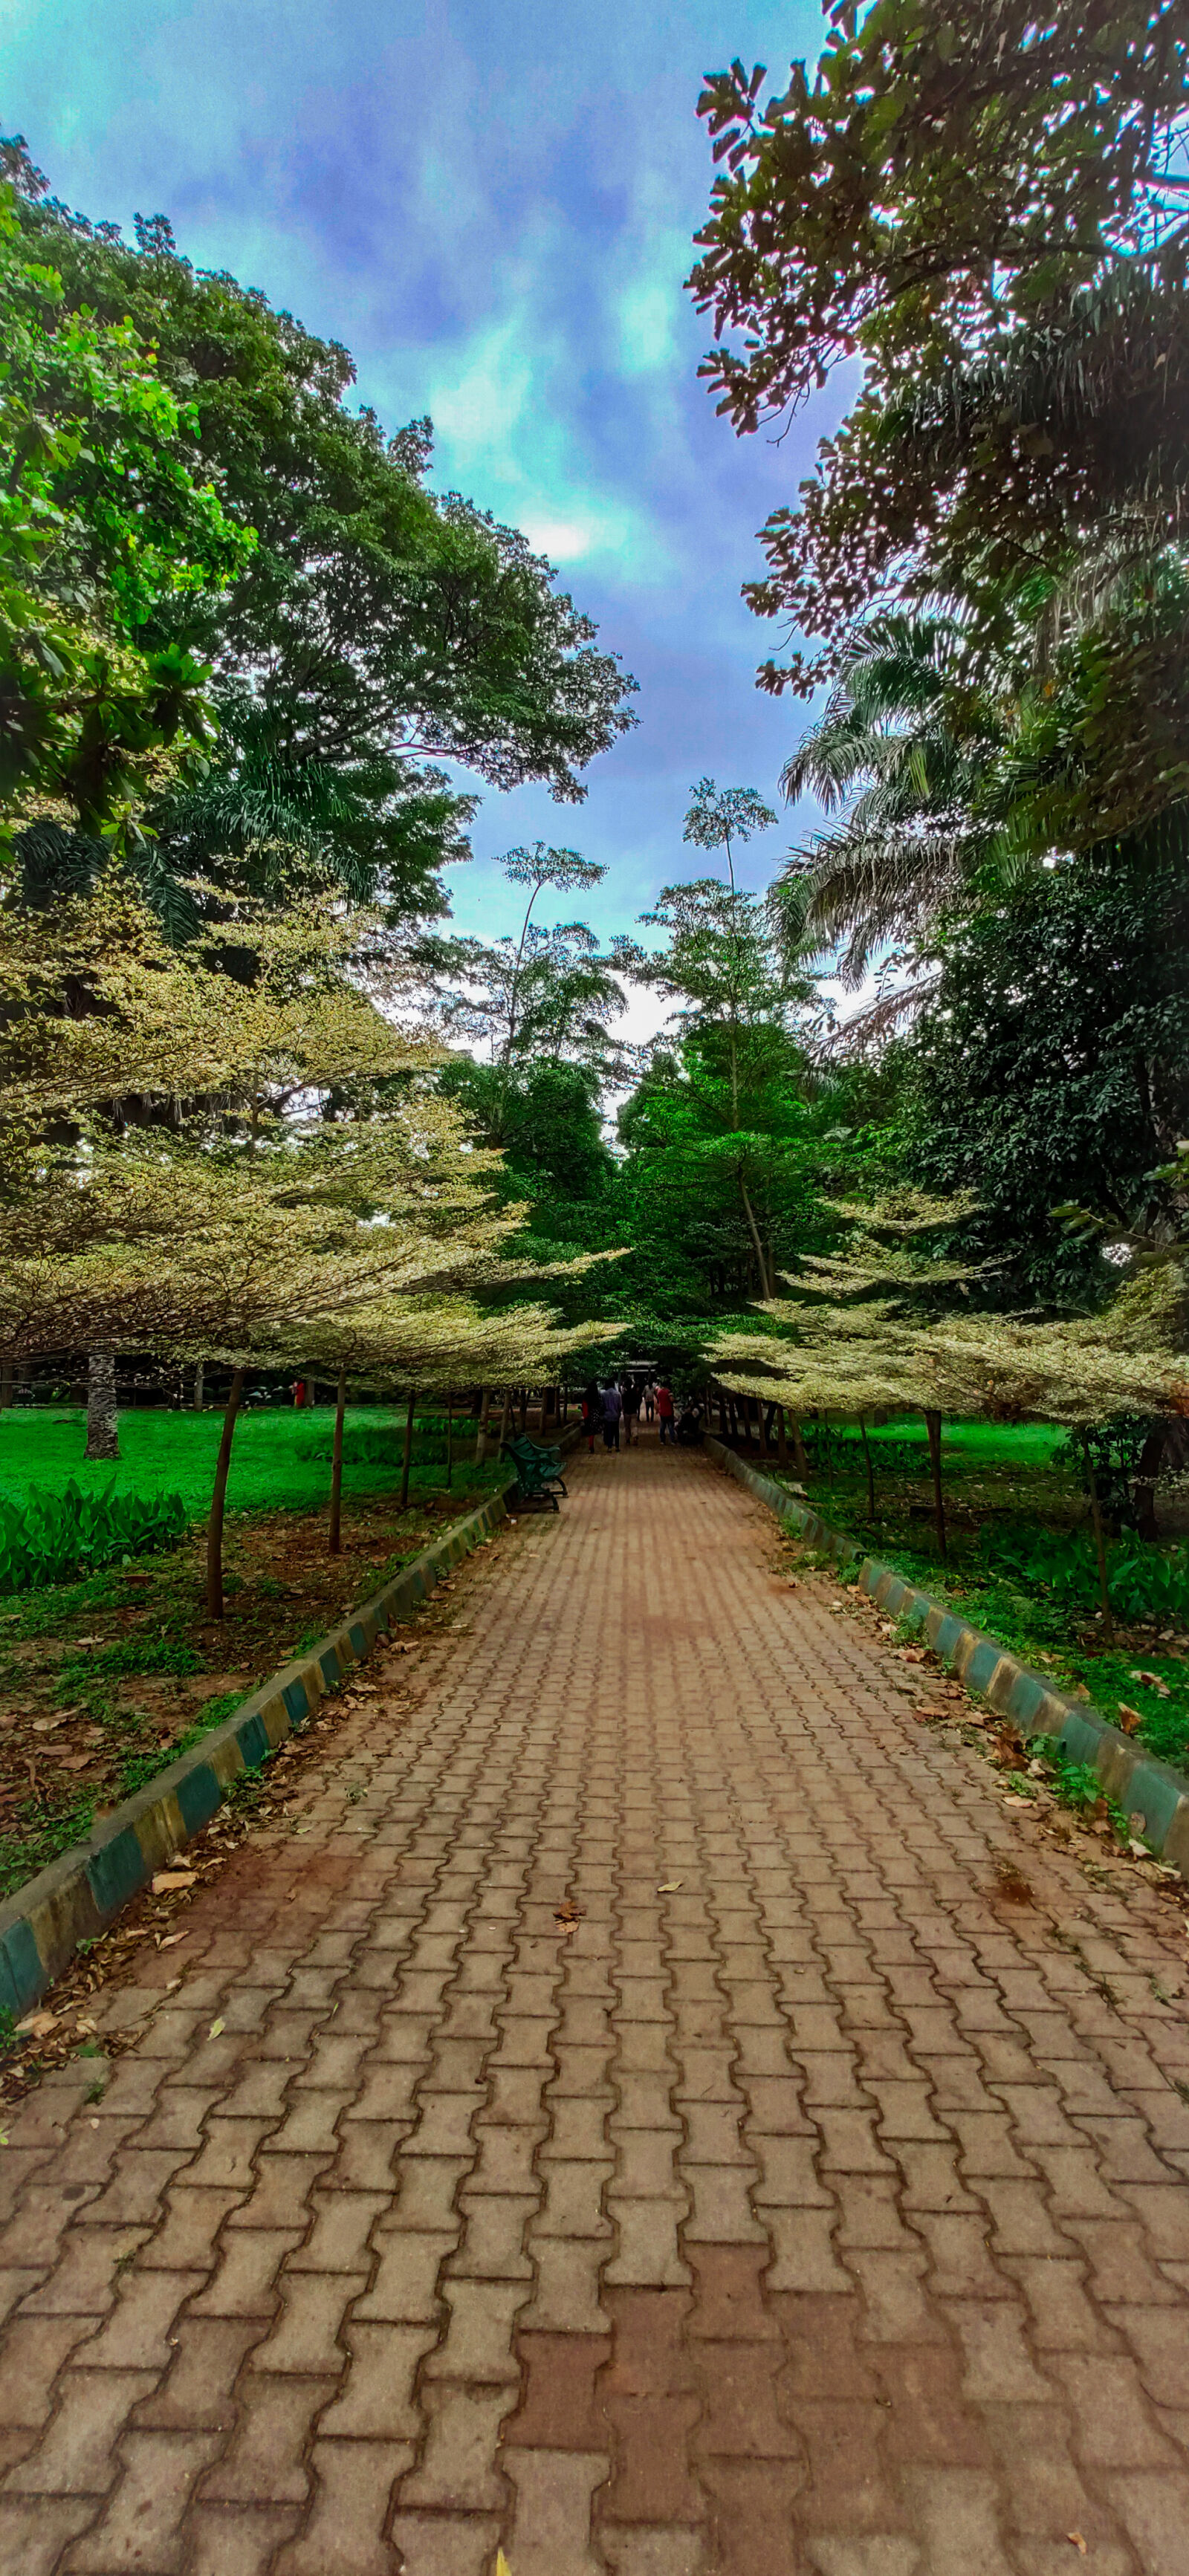 Xiaomi Redmi K20 sample photo. Lalbag botanical garden photography